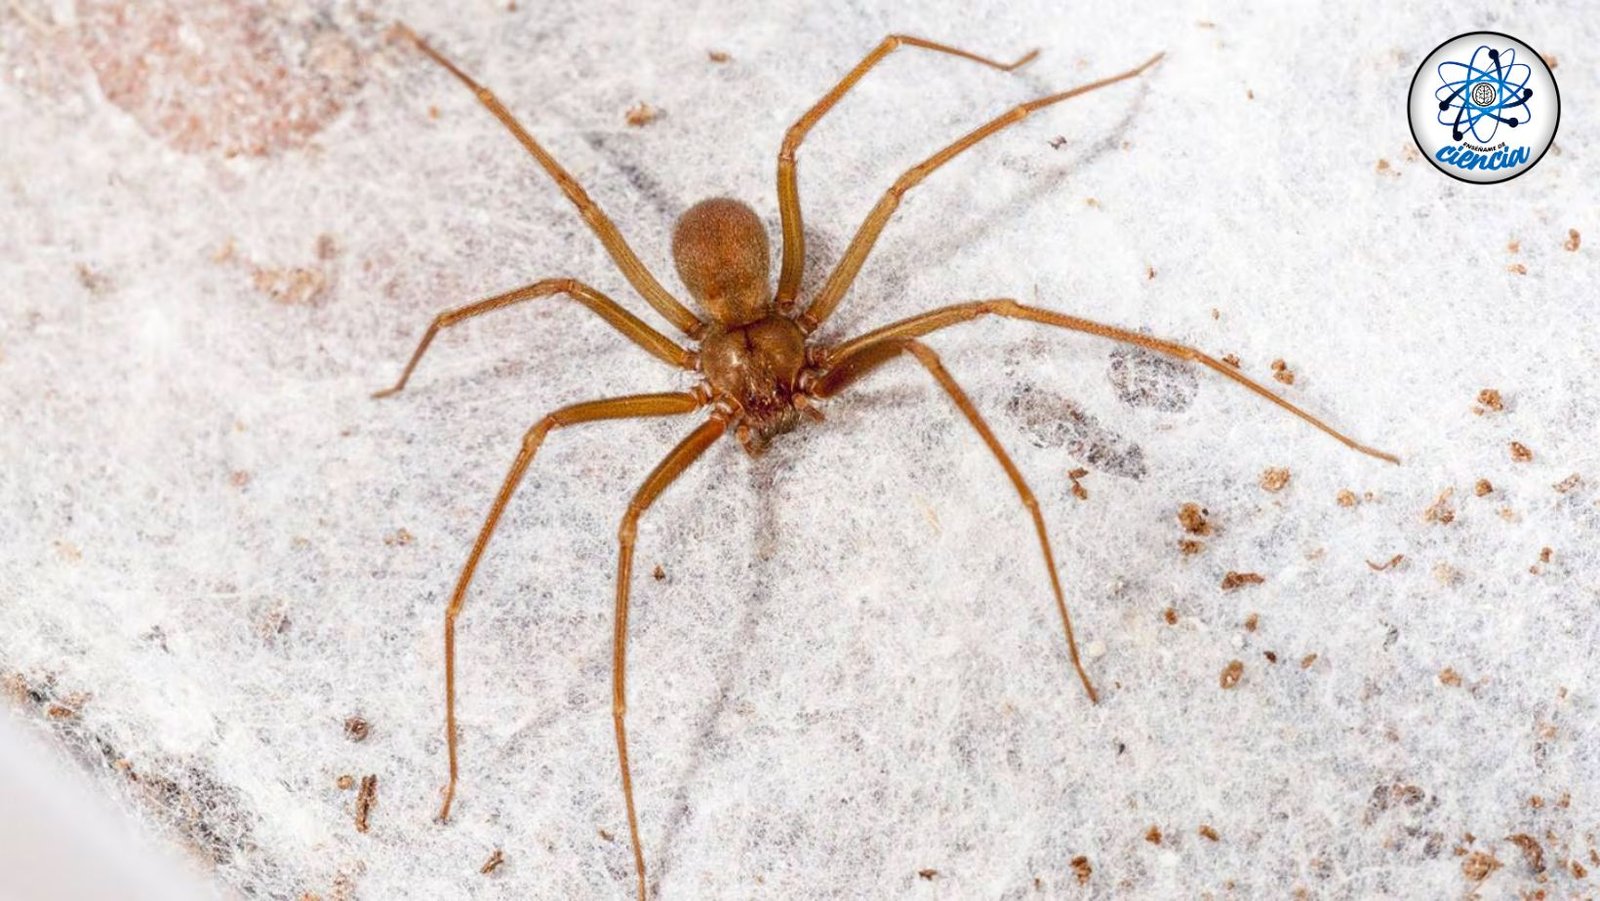 Trampas caseras efectivas para eliminar arañas violinistas y proteger tu hogar